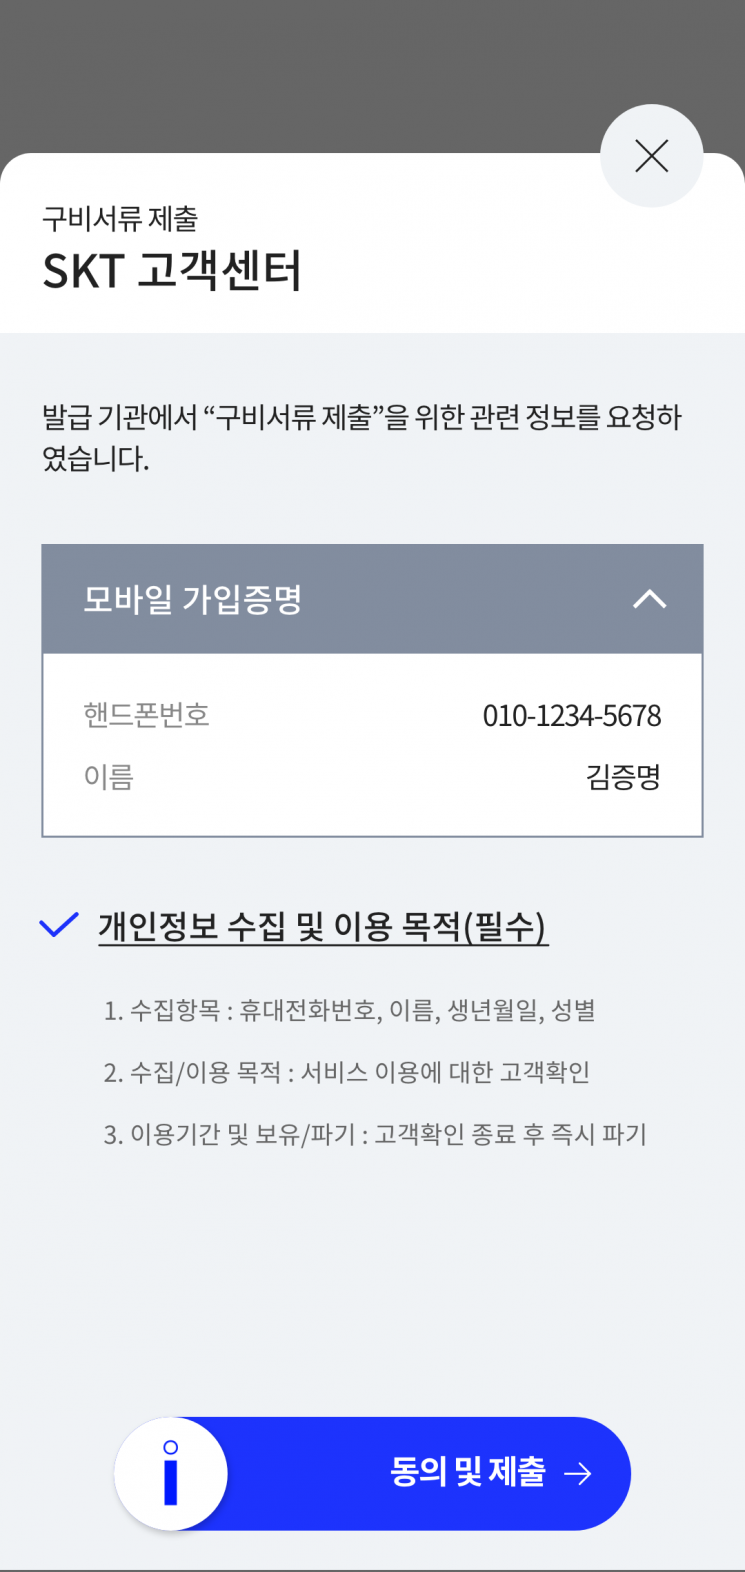 SKT "이니셜로 고객센터 업무 확 줄인다…모바일서 전자증명서 제출"